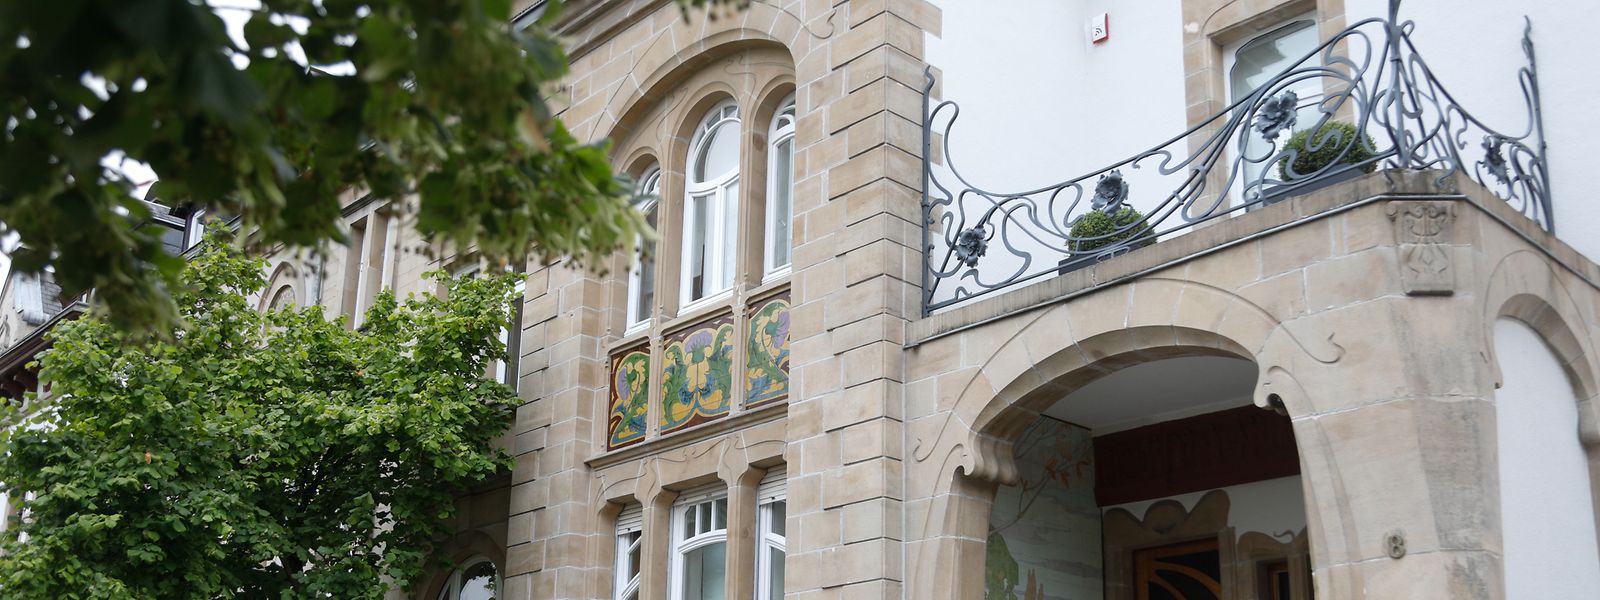 Bauten wie die Villa Bettendorf in Bad Mondorf gehören zum Jugendstil-Erbe.